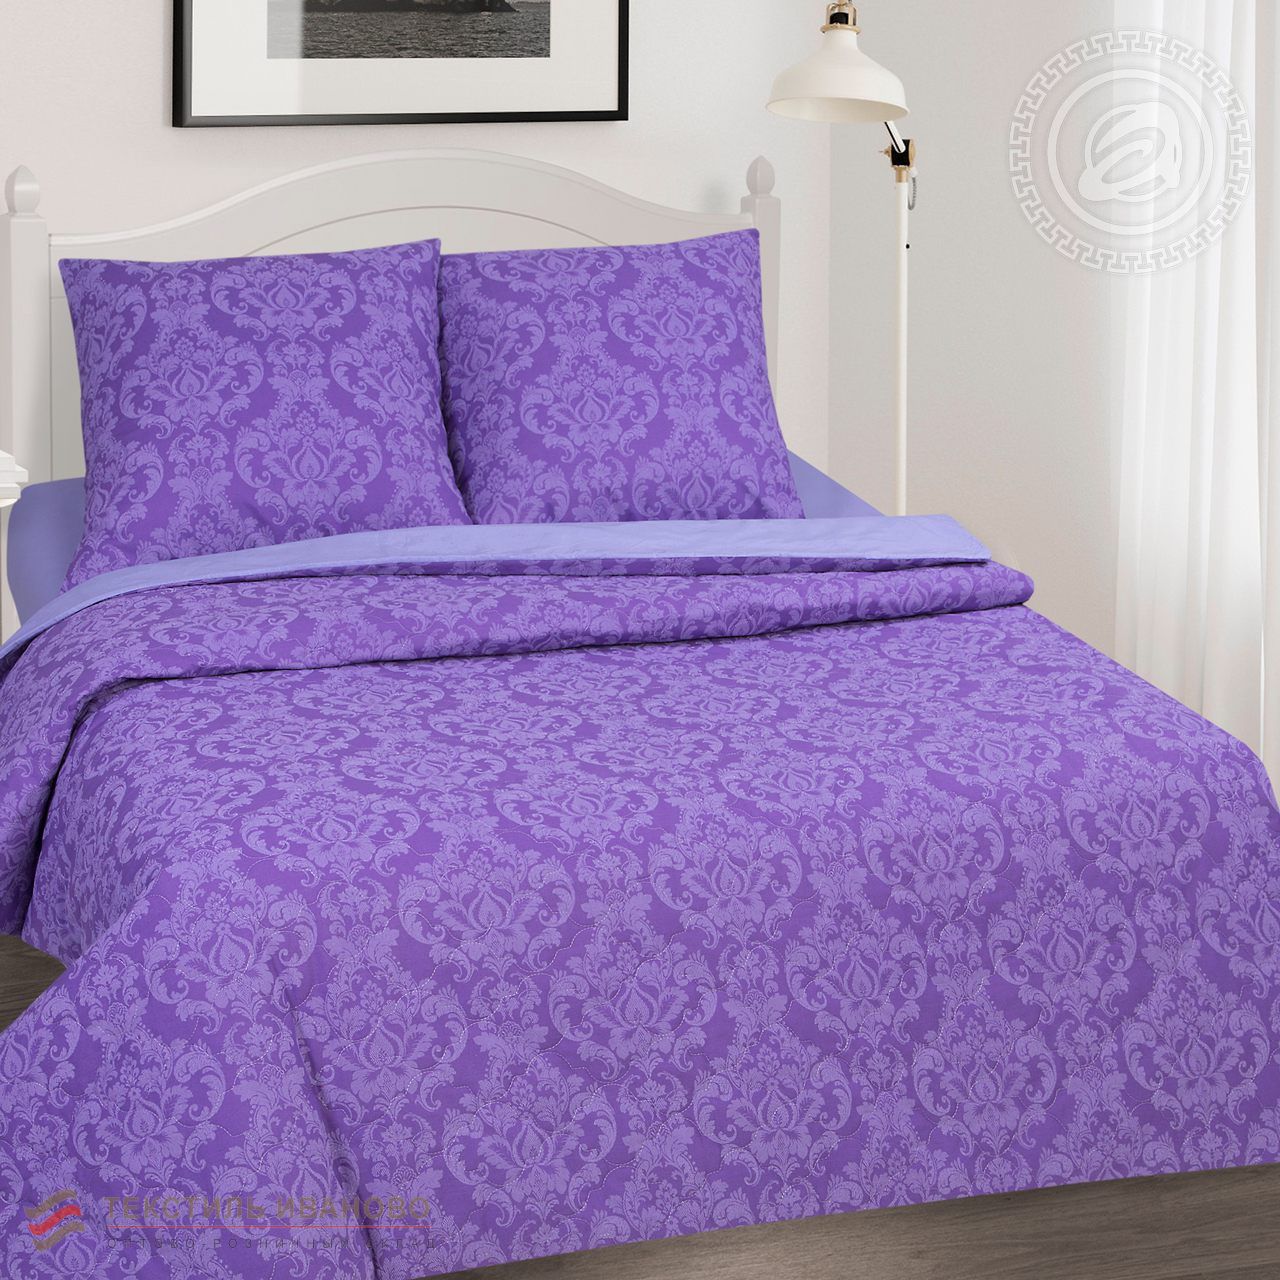  Комплект постельного белья Византия поплин, фото 1 